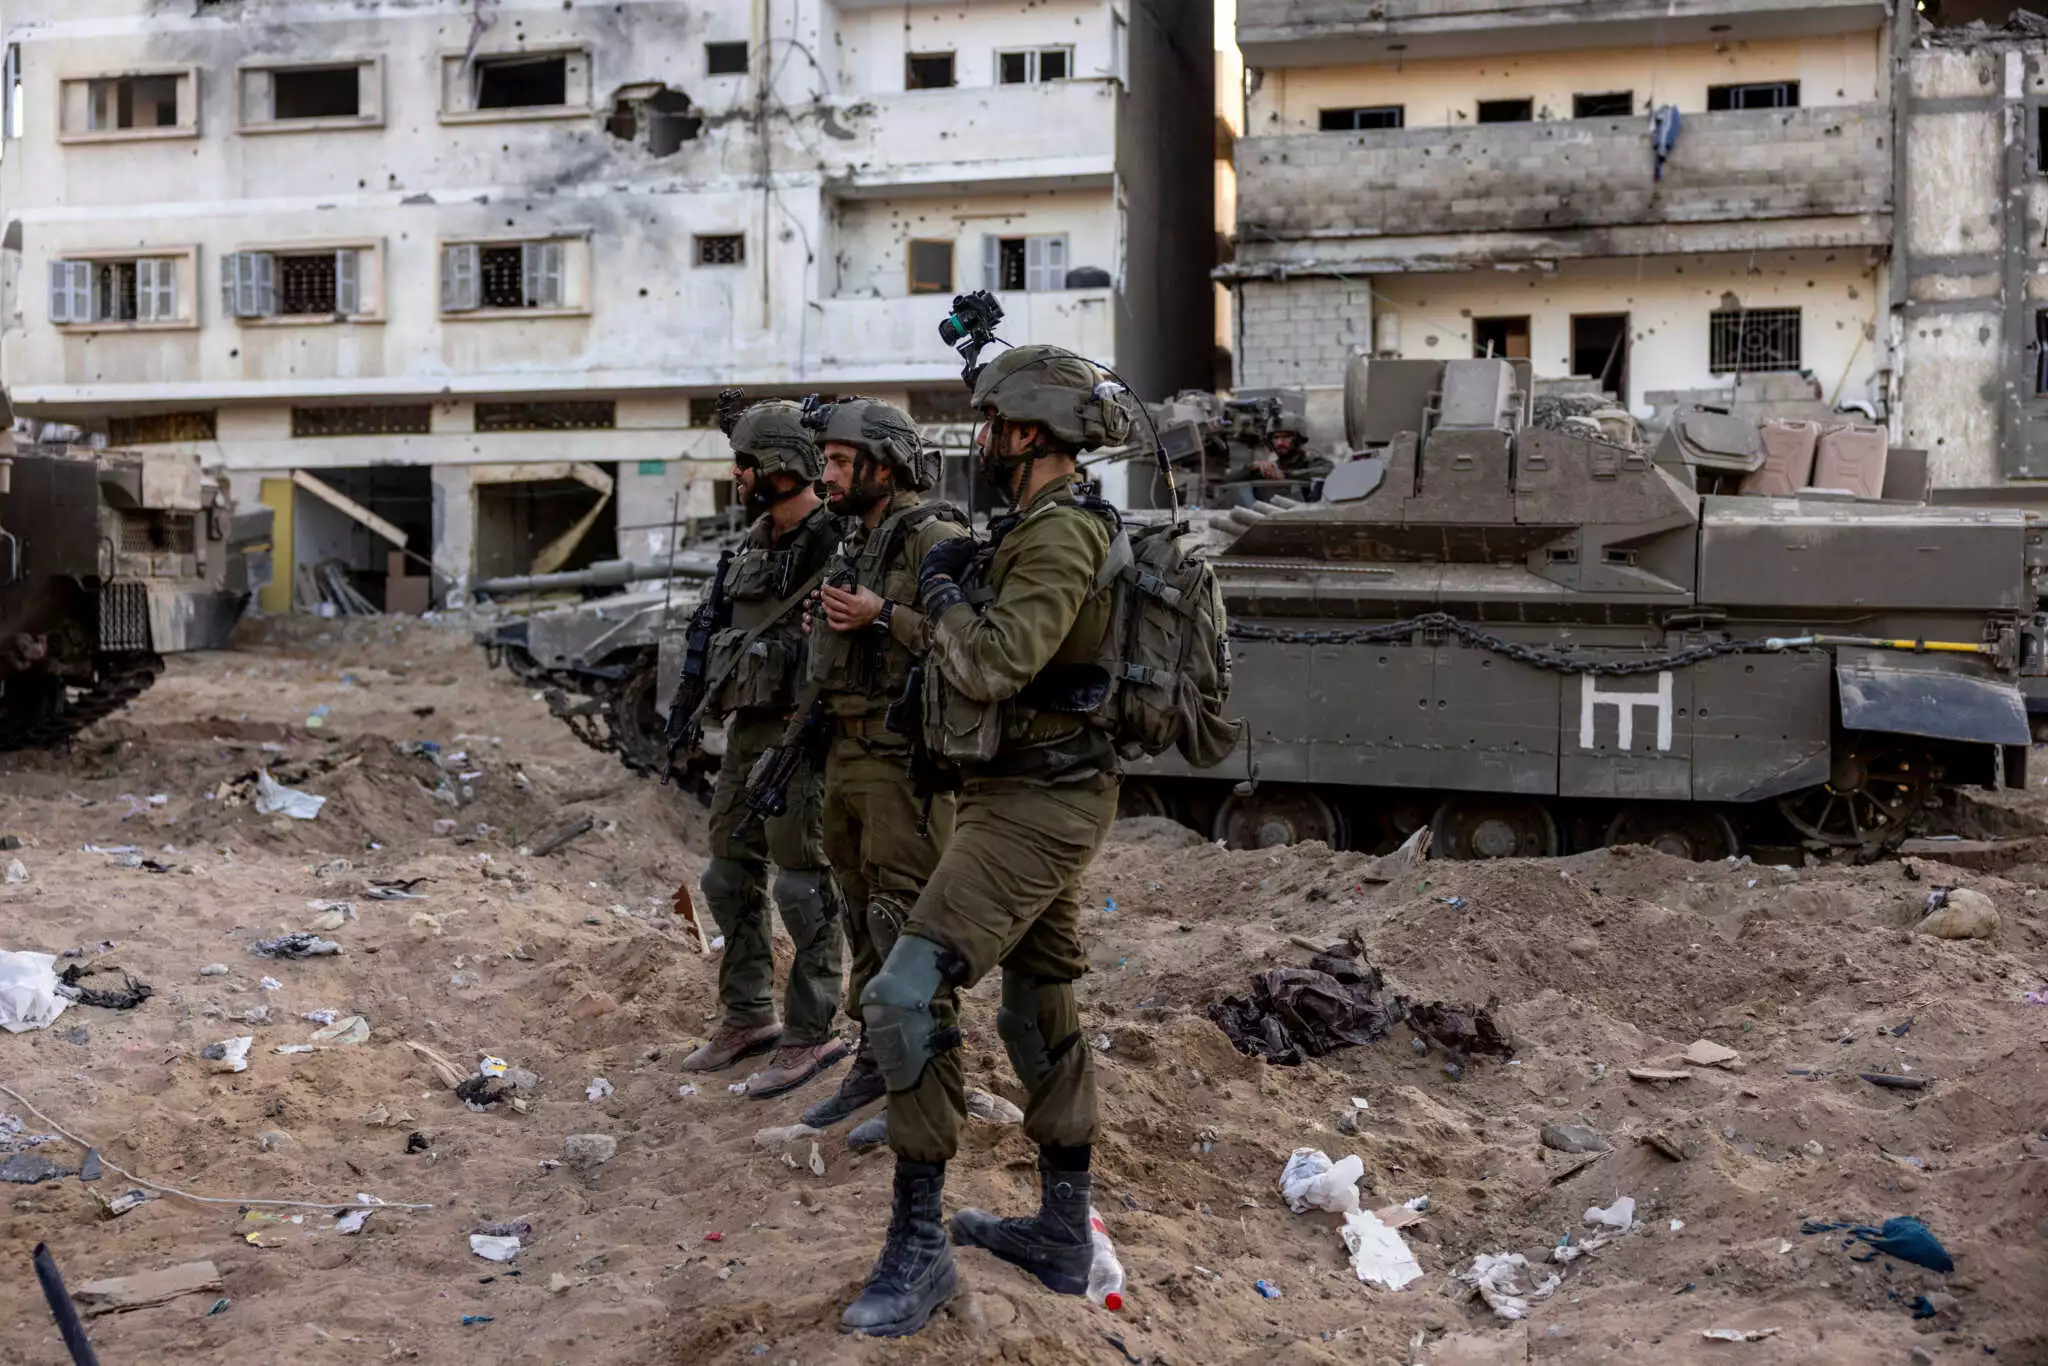 Μέση Ανατολή: «Η Χαμάς έχασε τον έλεγχο της βόρειας Γάζας» υποστηρίζει το Ισραήλ - Νέο τελεσίγραφο Νετανιάχου στη Χαμάς για τους ομήρους